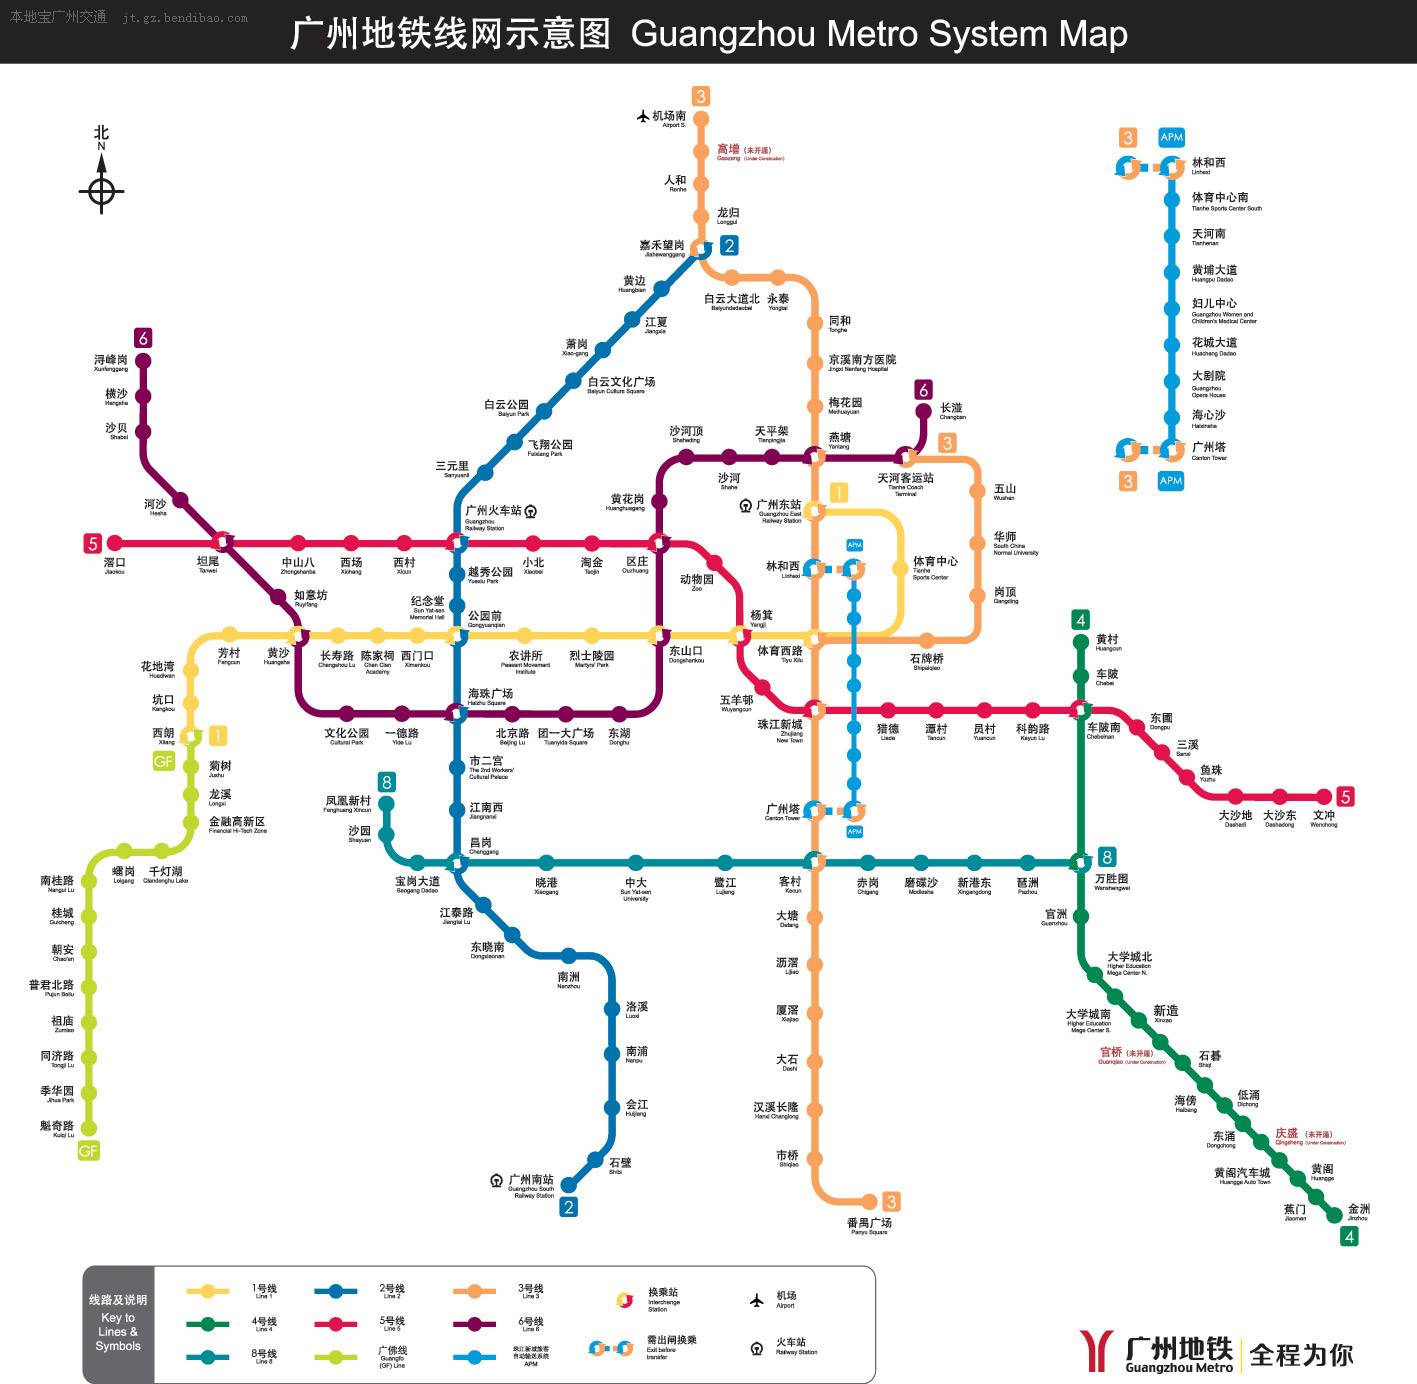 百度地图 - 广州市轨道交通图: 广州地铁 全程为你--广州地铁官方网站